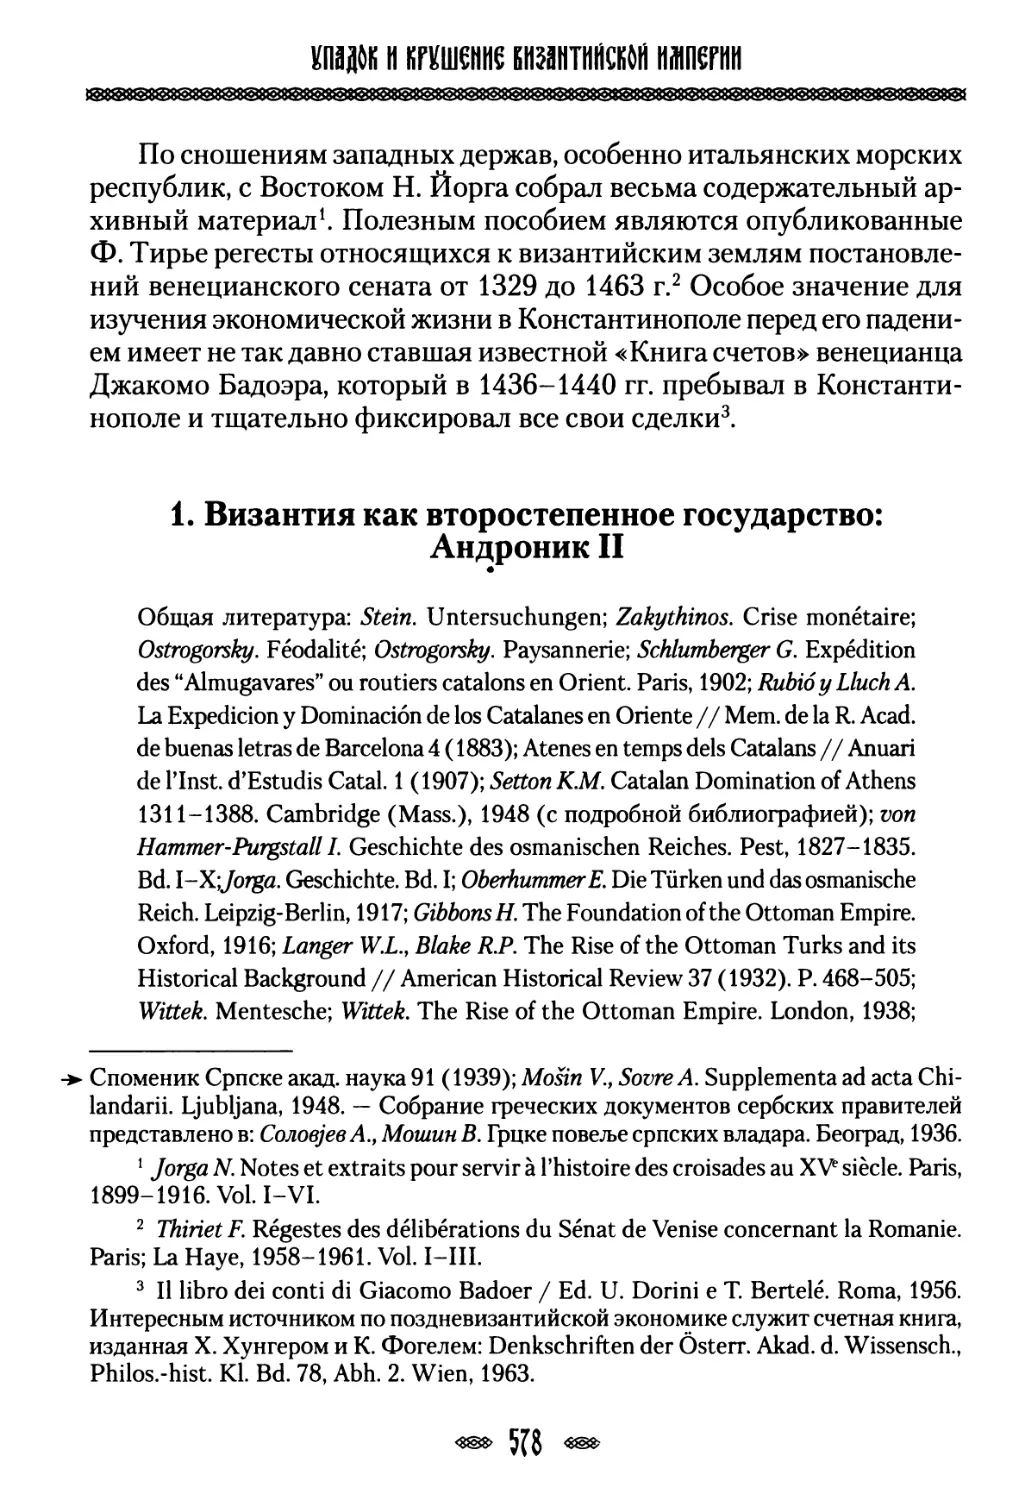 1. Византия как второстепенное государство: Андроник II